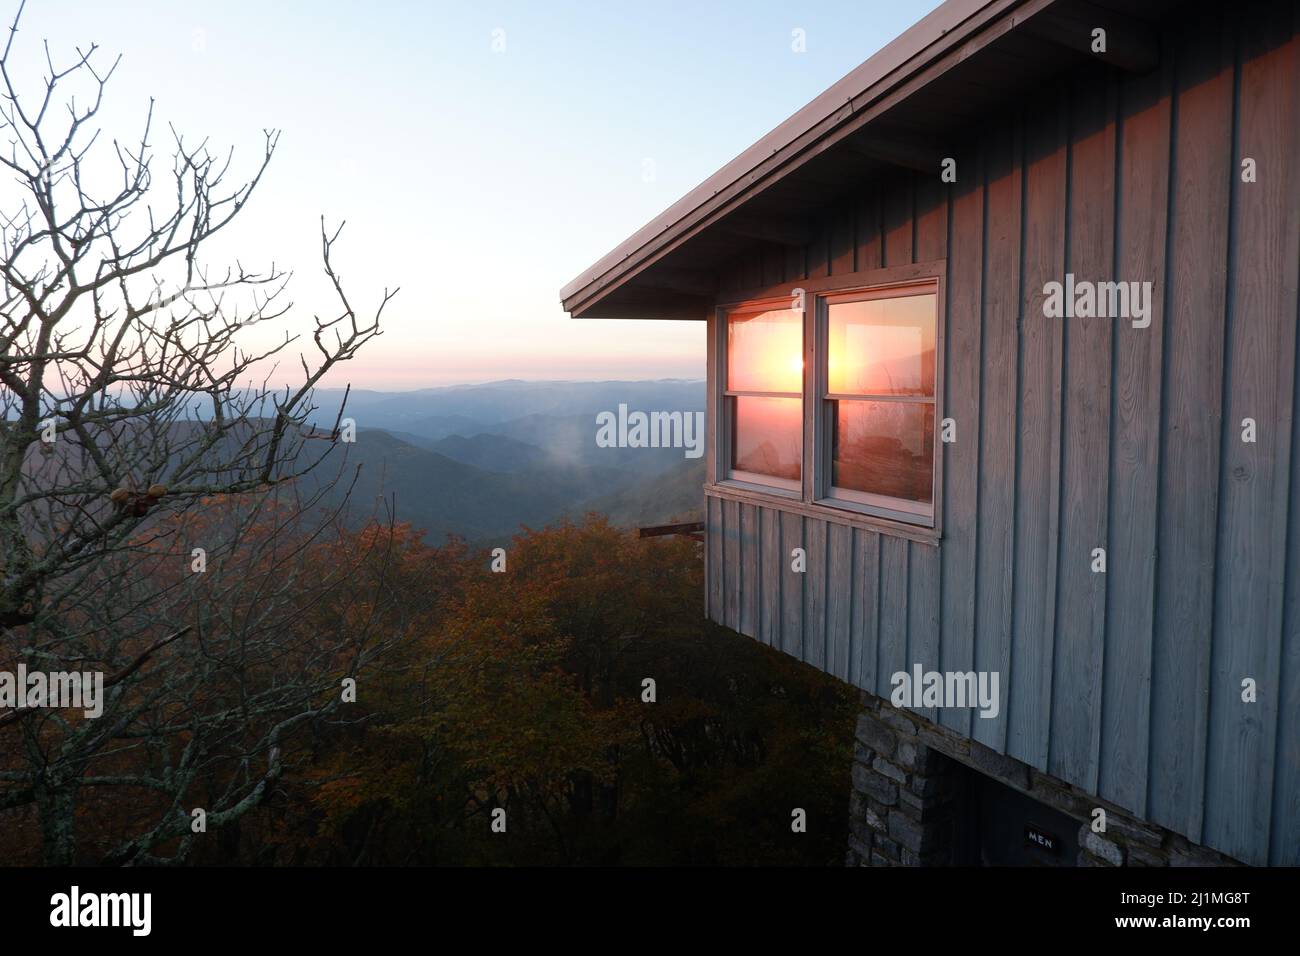 Hütte mit Blick auf die Berge bei Sonnenuntergang/Dämmerung Stockfoto